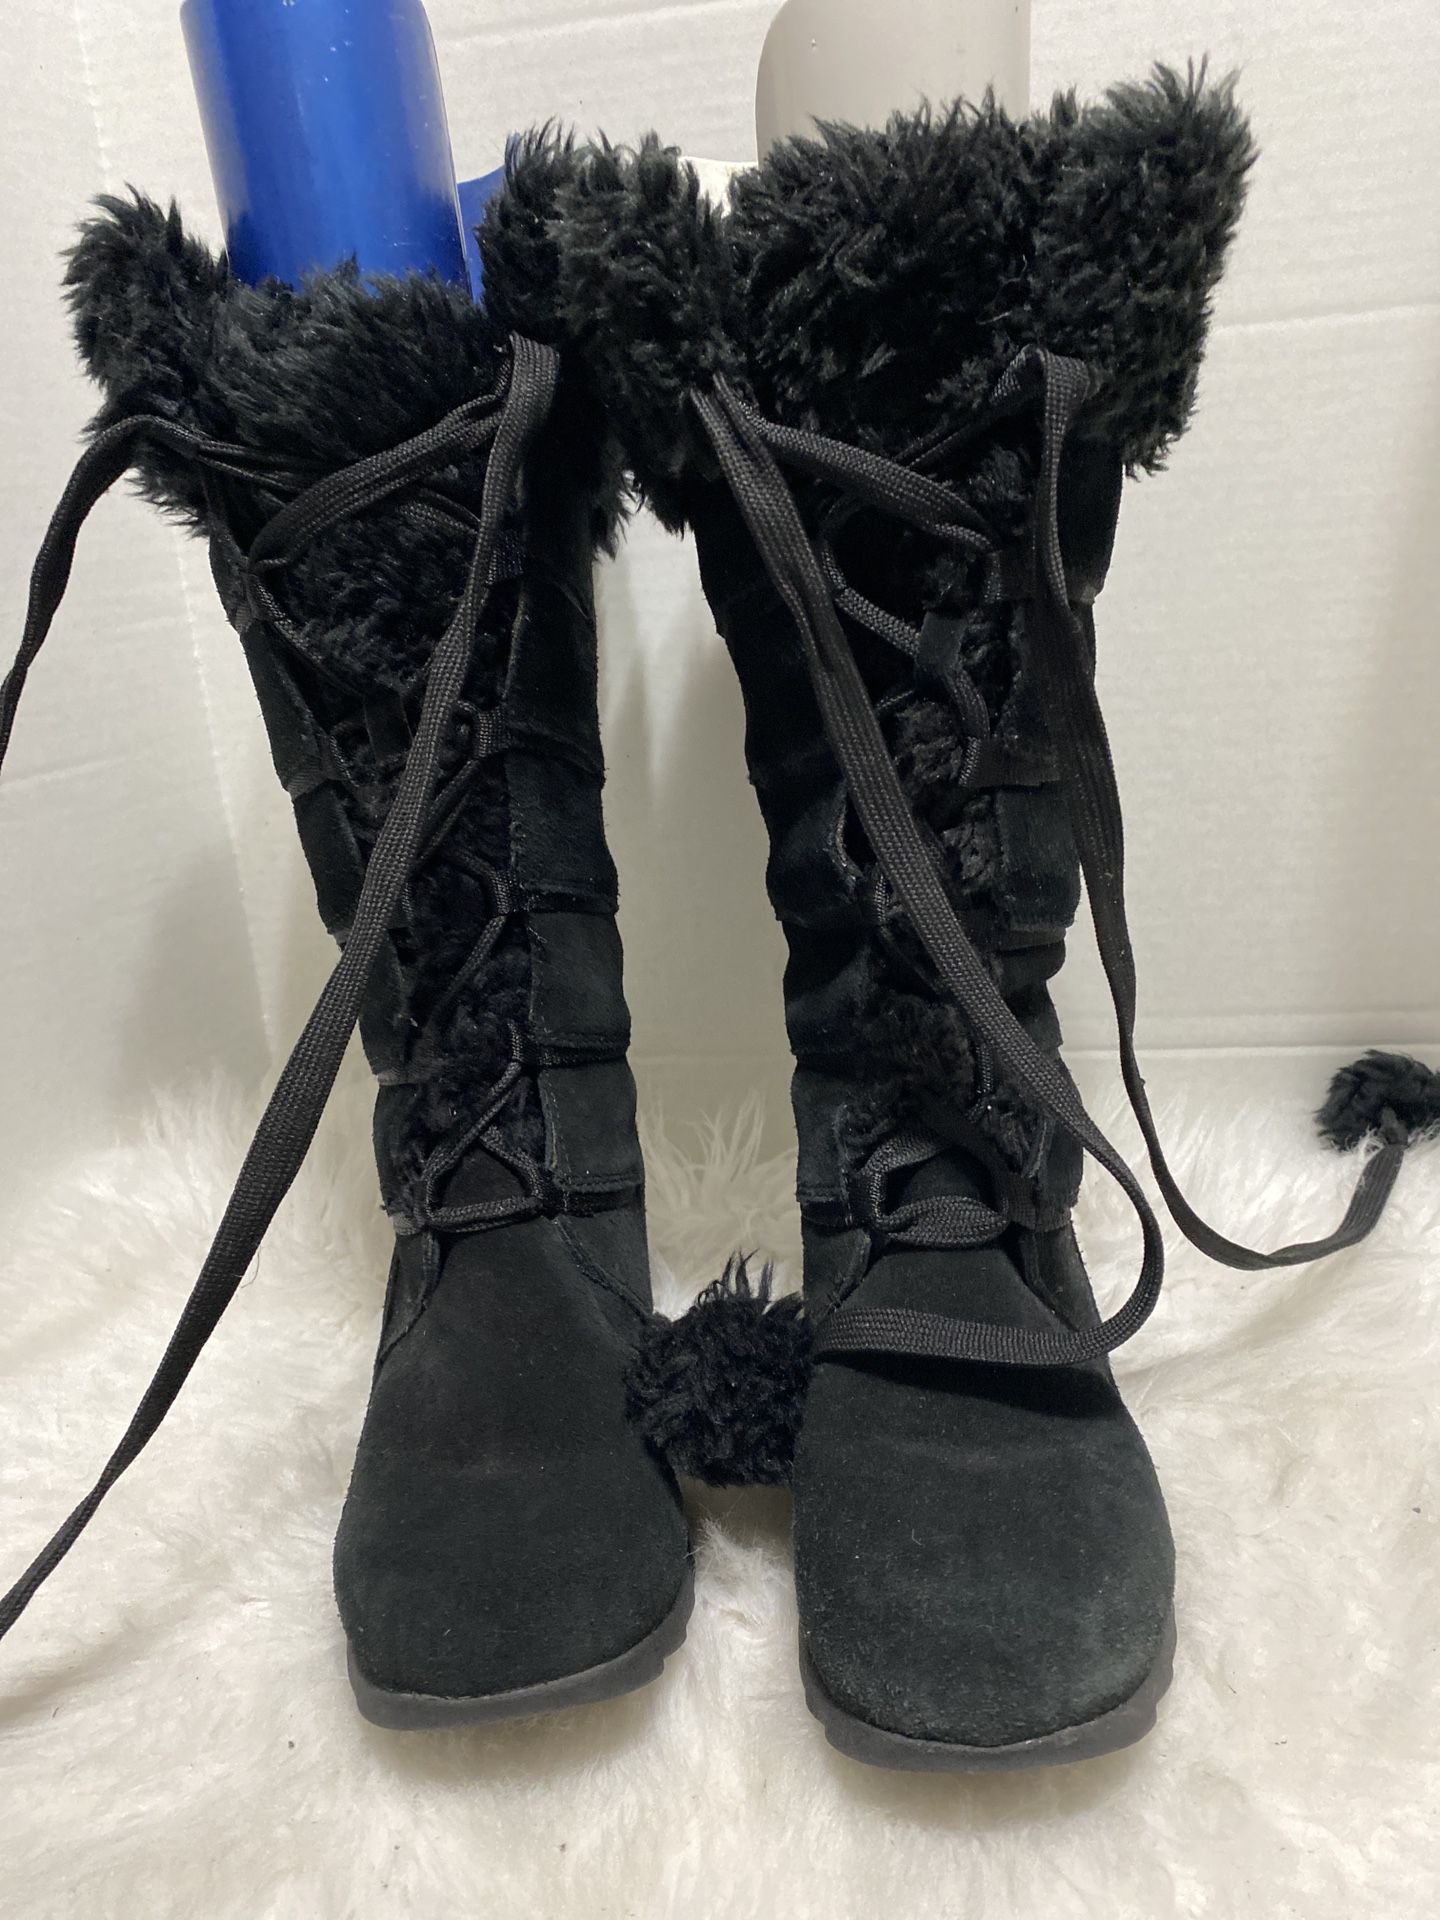 Sporto Waterproof Chelsea Fur Black Boots Women’s Size 6.5